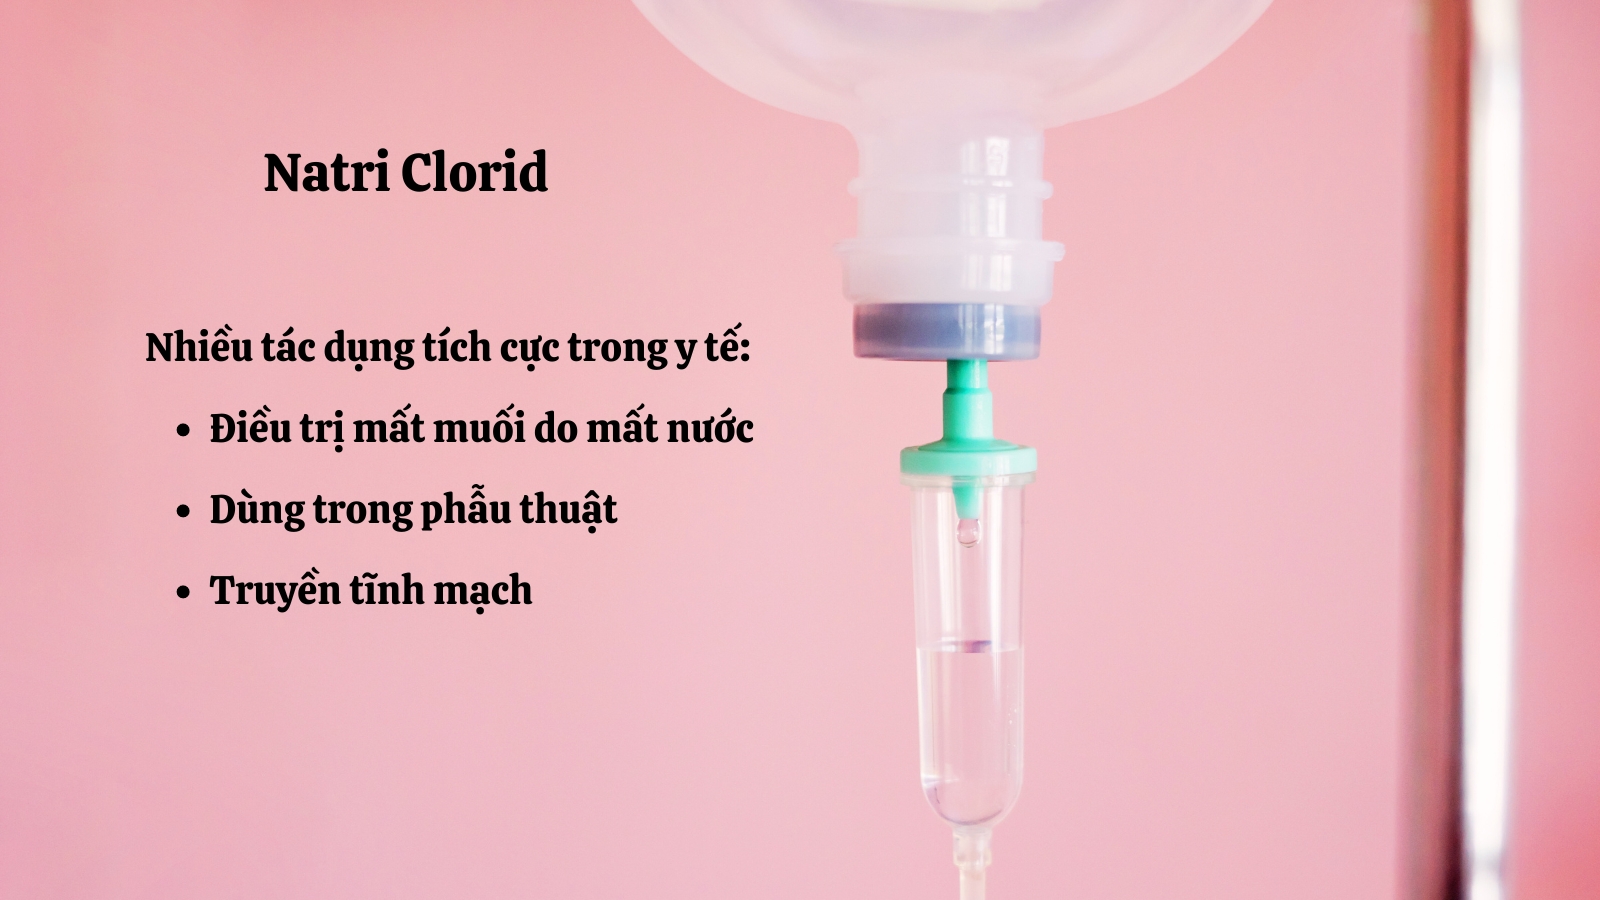 Natri Clorid có nhiều công dụng hỗ trợ y học